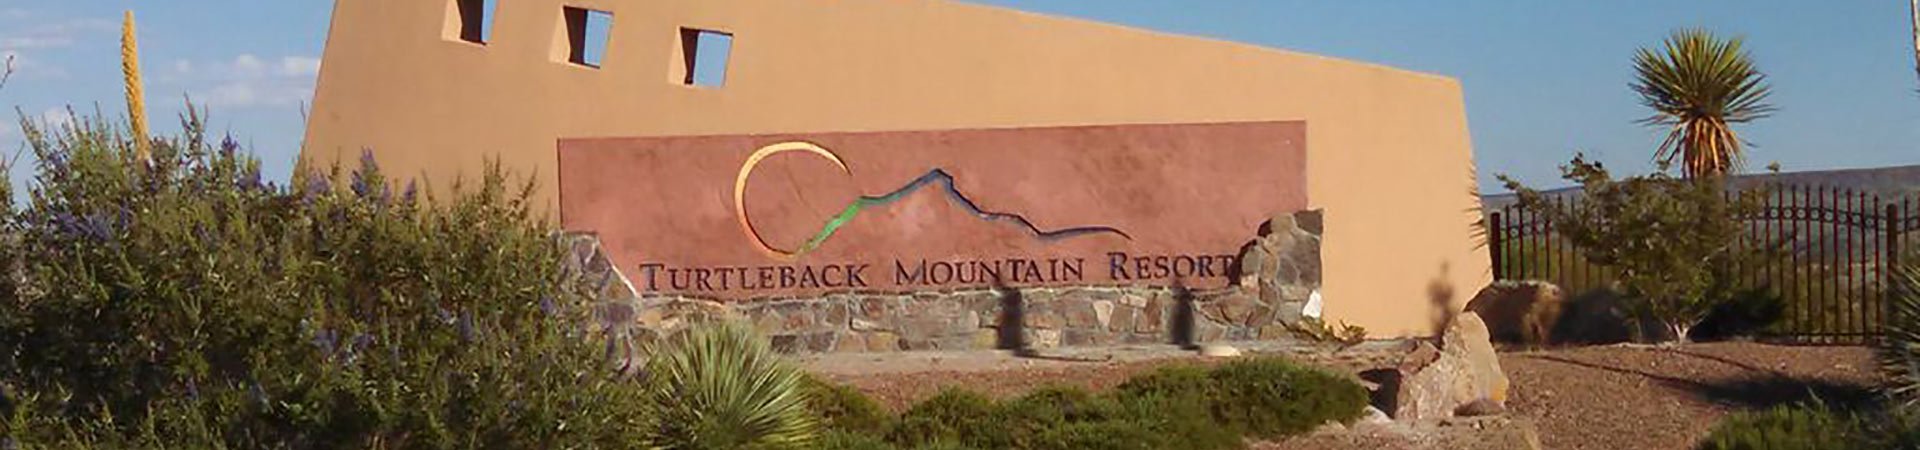 Turtleback Mountain Resort